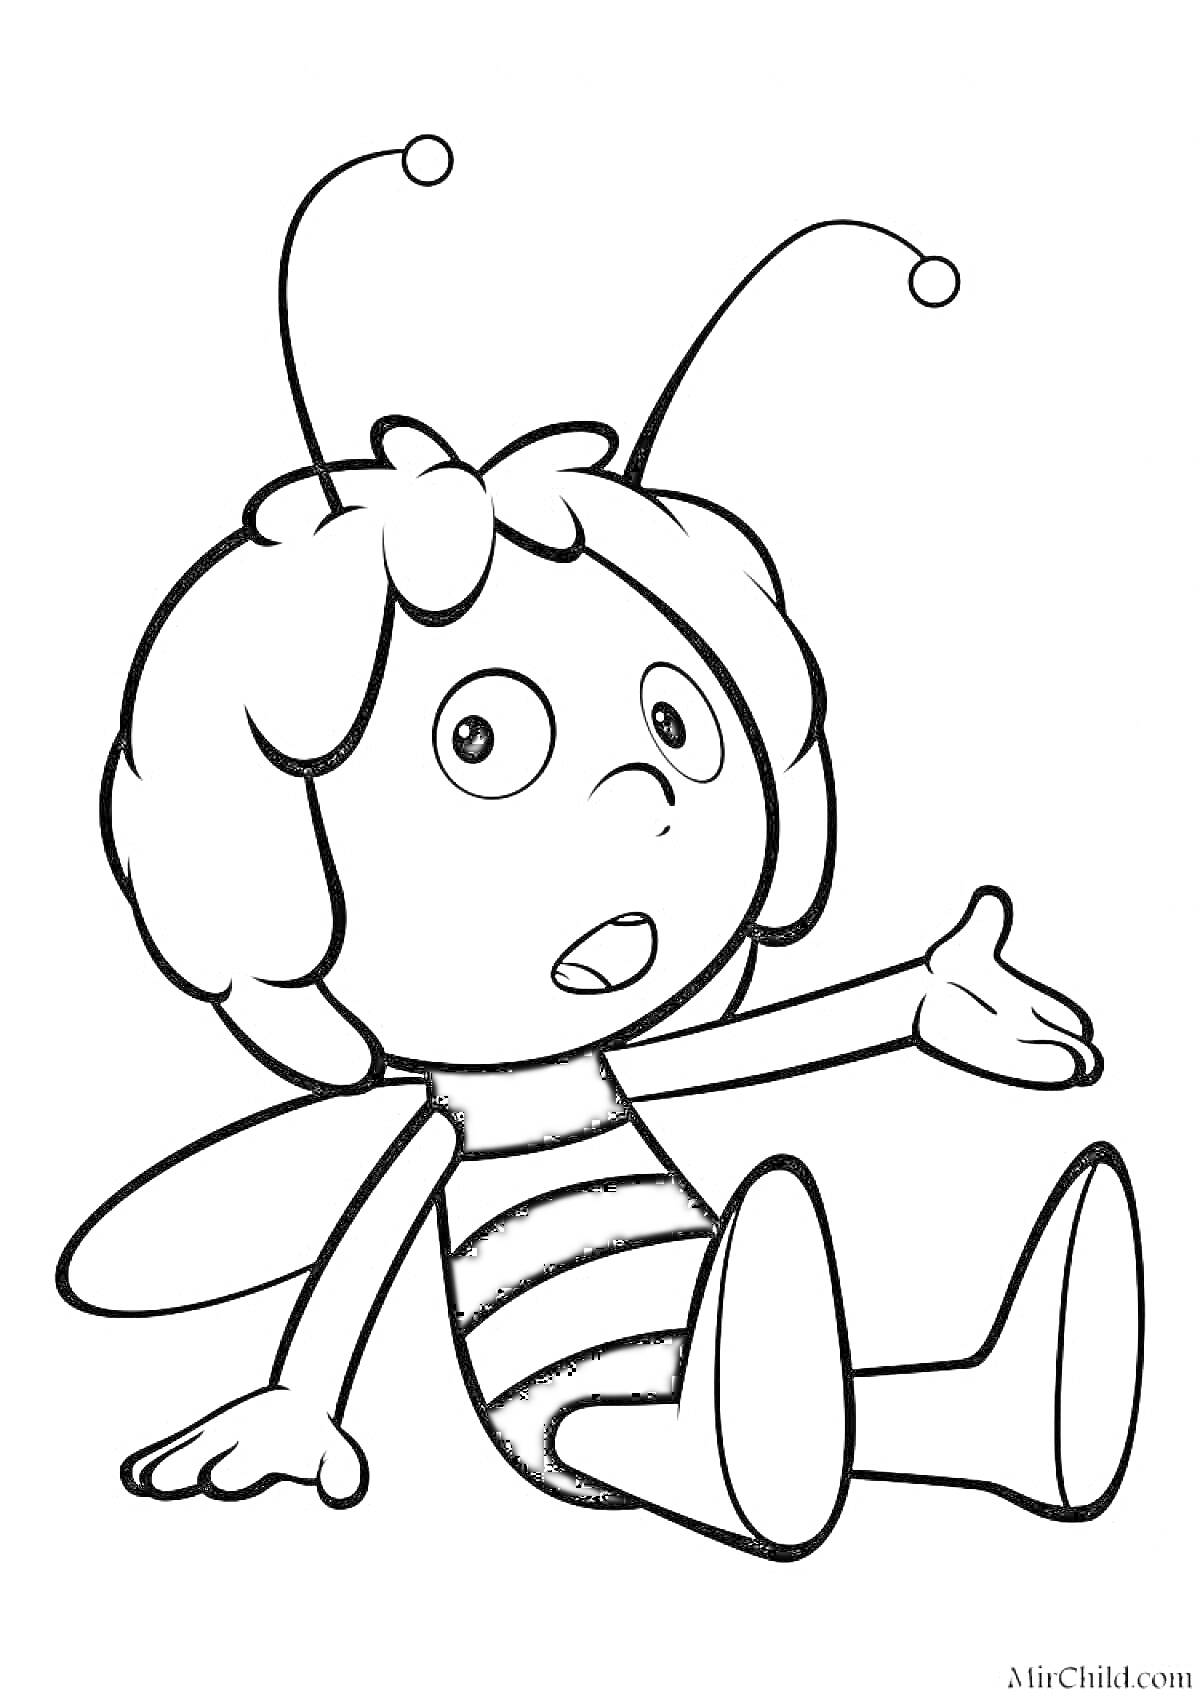 Раскраска Раскраска с пчелкой, сидящей на земле с поднятой рукой